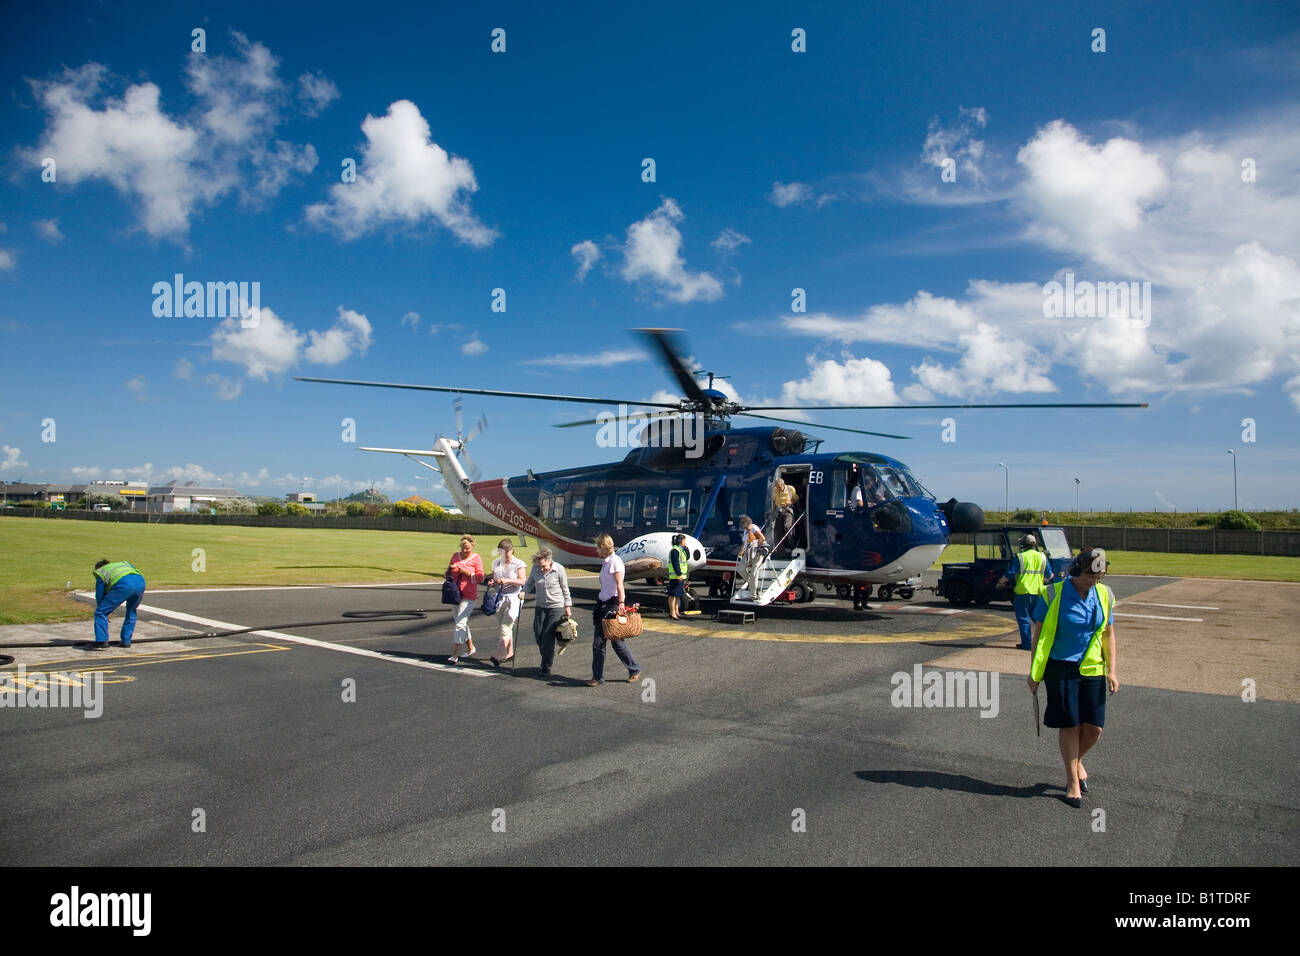 Sikorsky S61 helicóptero aterrizó en el helipuerto de Penzance aeropuerto de Isles of Scilly Cornwall Inglaterra GB Gran Bretaña UK Foto de stock